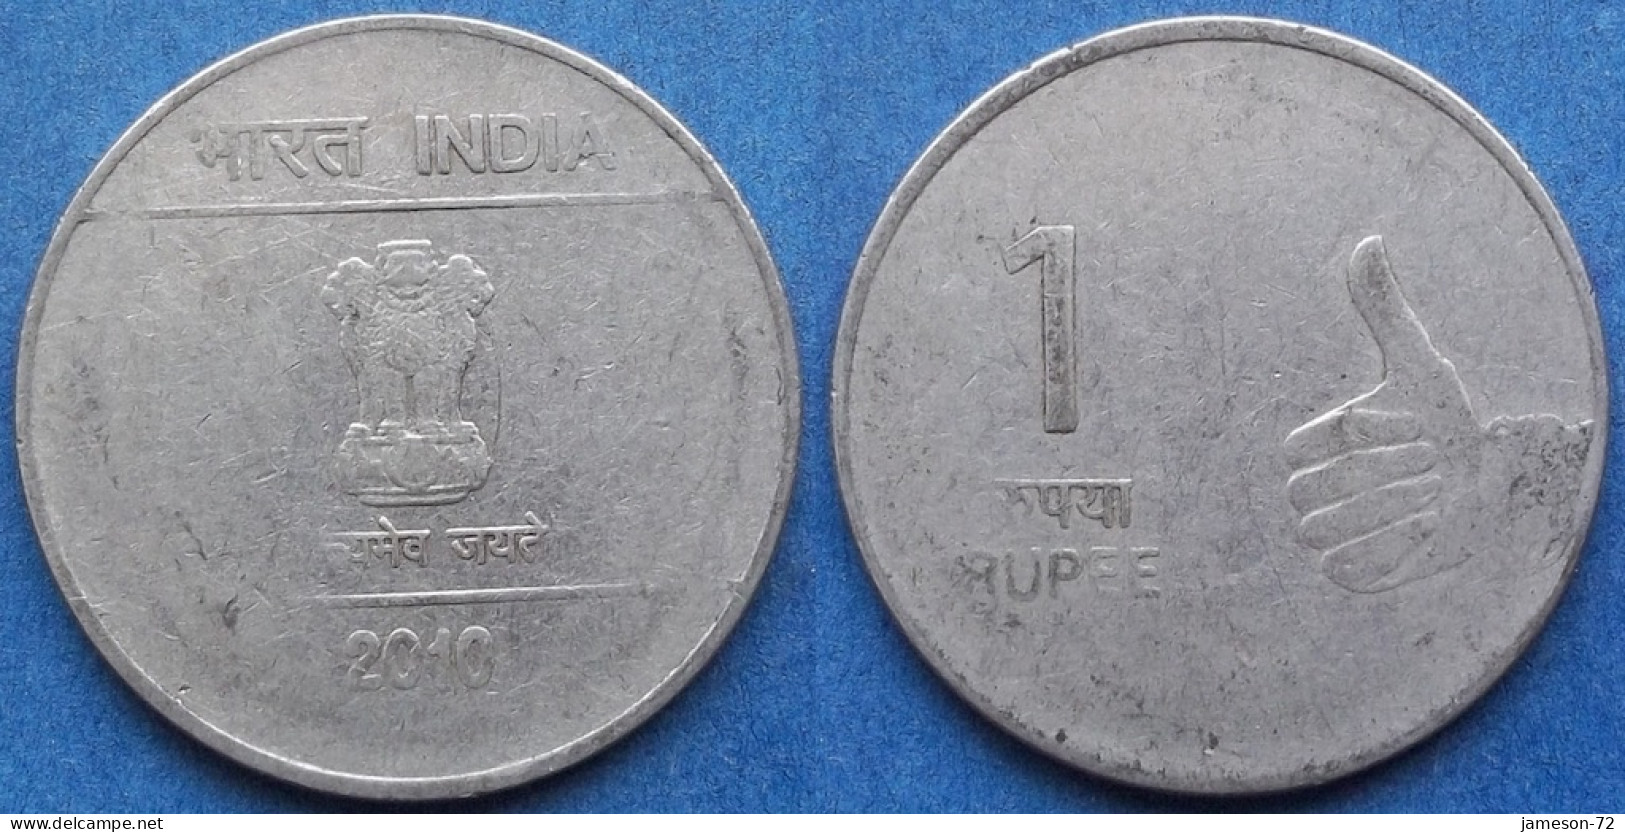 INDIA - 1 Rupee 2010 KM# 331 Republic Decimal Coinage (1957) - Edelweiss Coins - Géorgie